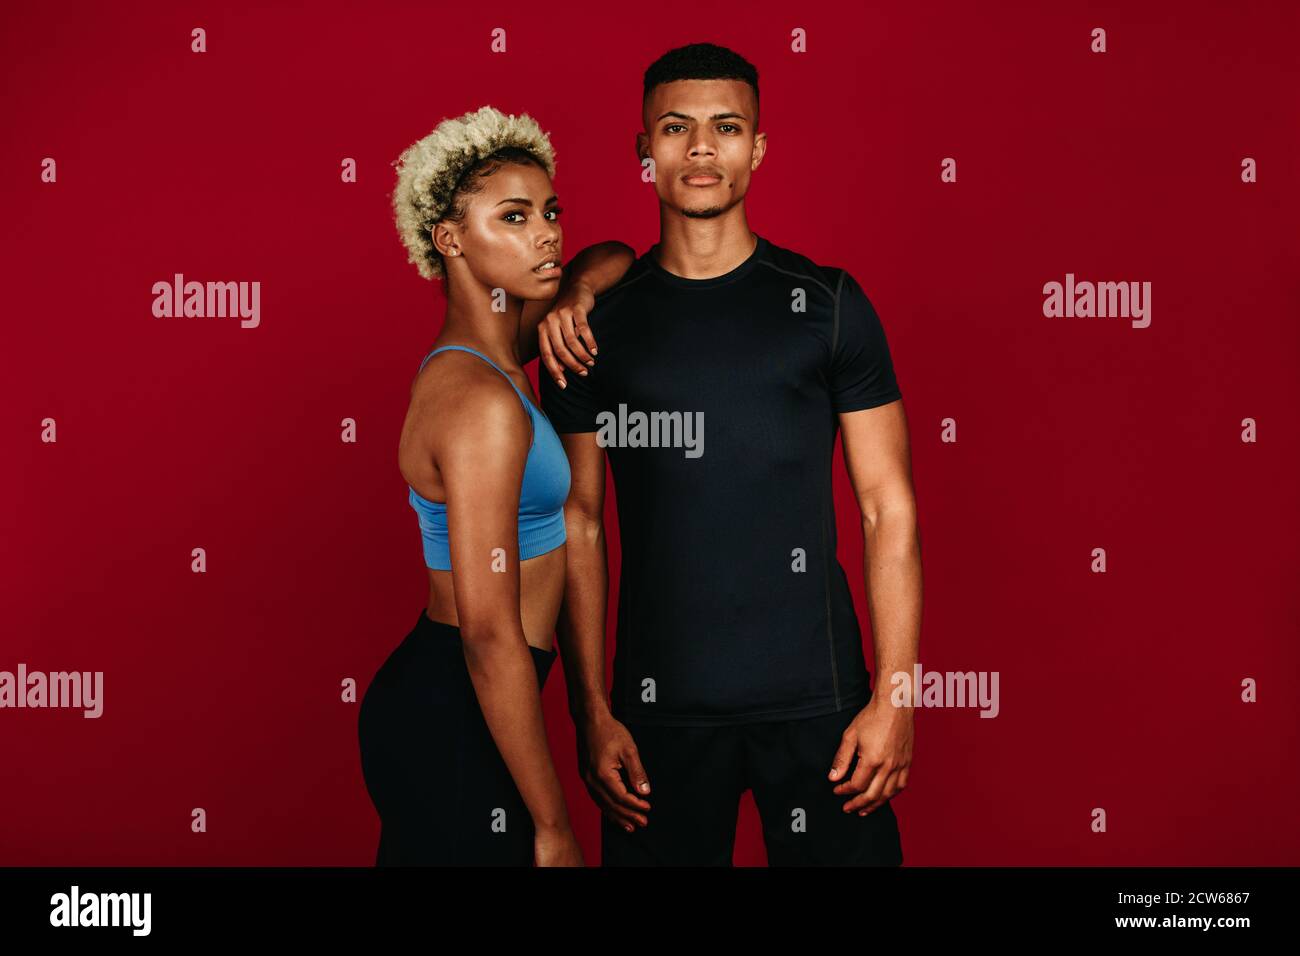 Muskulöses Fitness-Paar, das während des Trainings zusammen steht. afroamerikanische athletische Mann und Frau stehen zusammen auf kastanienbraunen Hintergrund. Stockfoto